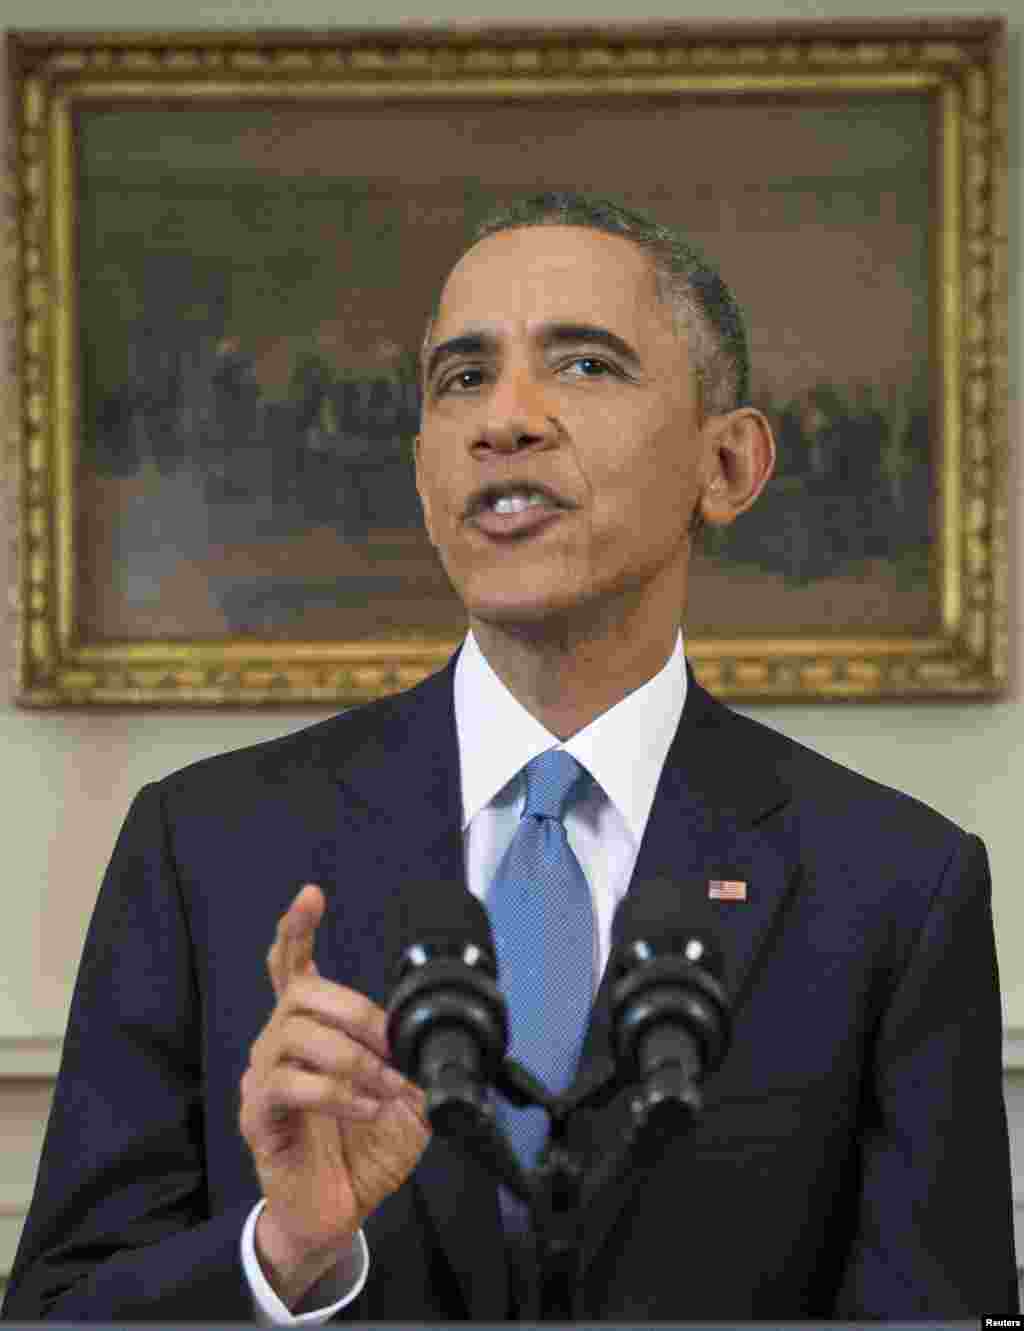 رئيس جمهوری ايالات متحده، باراک اوباما، در سخنرانی کوتاهی خطاب به ملت آمريکا از تغيير اساسی &nbsp;در سياست کشور نسبت به کوبا پرده برداشت -- ۲۶ آذر ۱۳۹۳ (۱۷ دسامبر ۲۰۱۴)